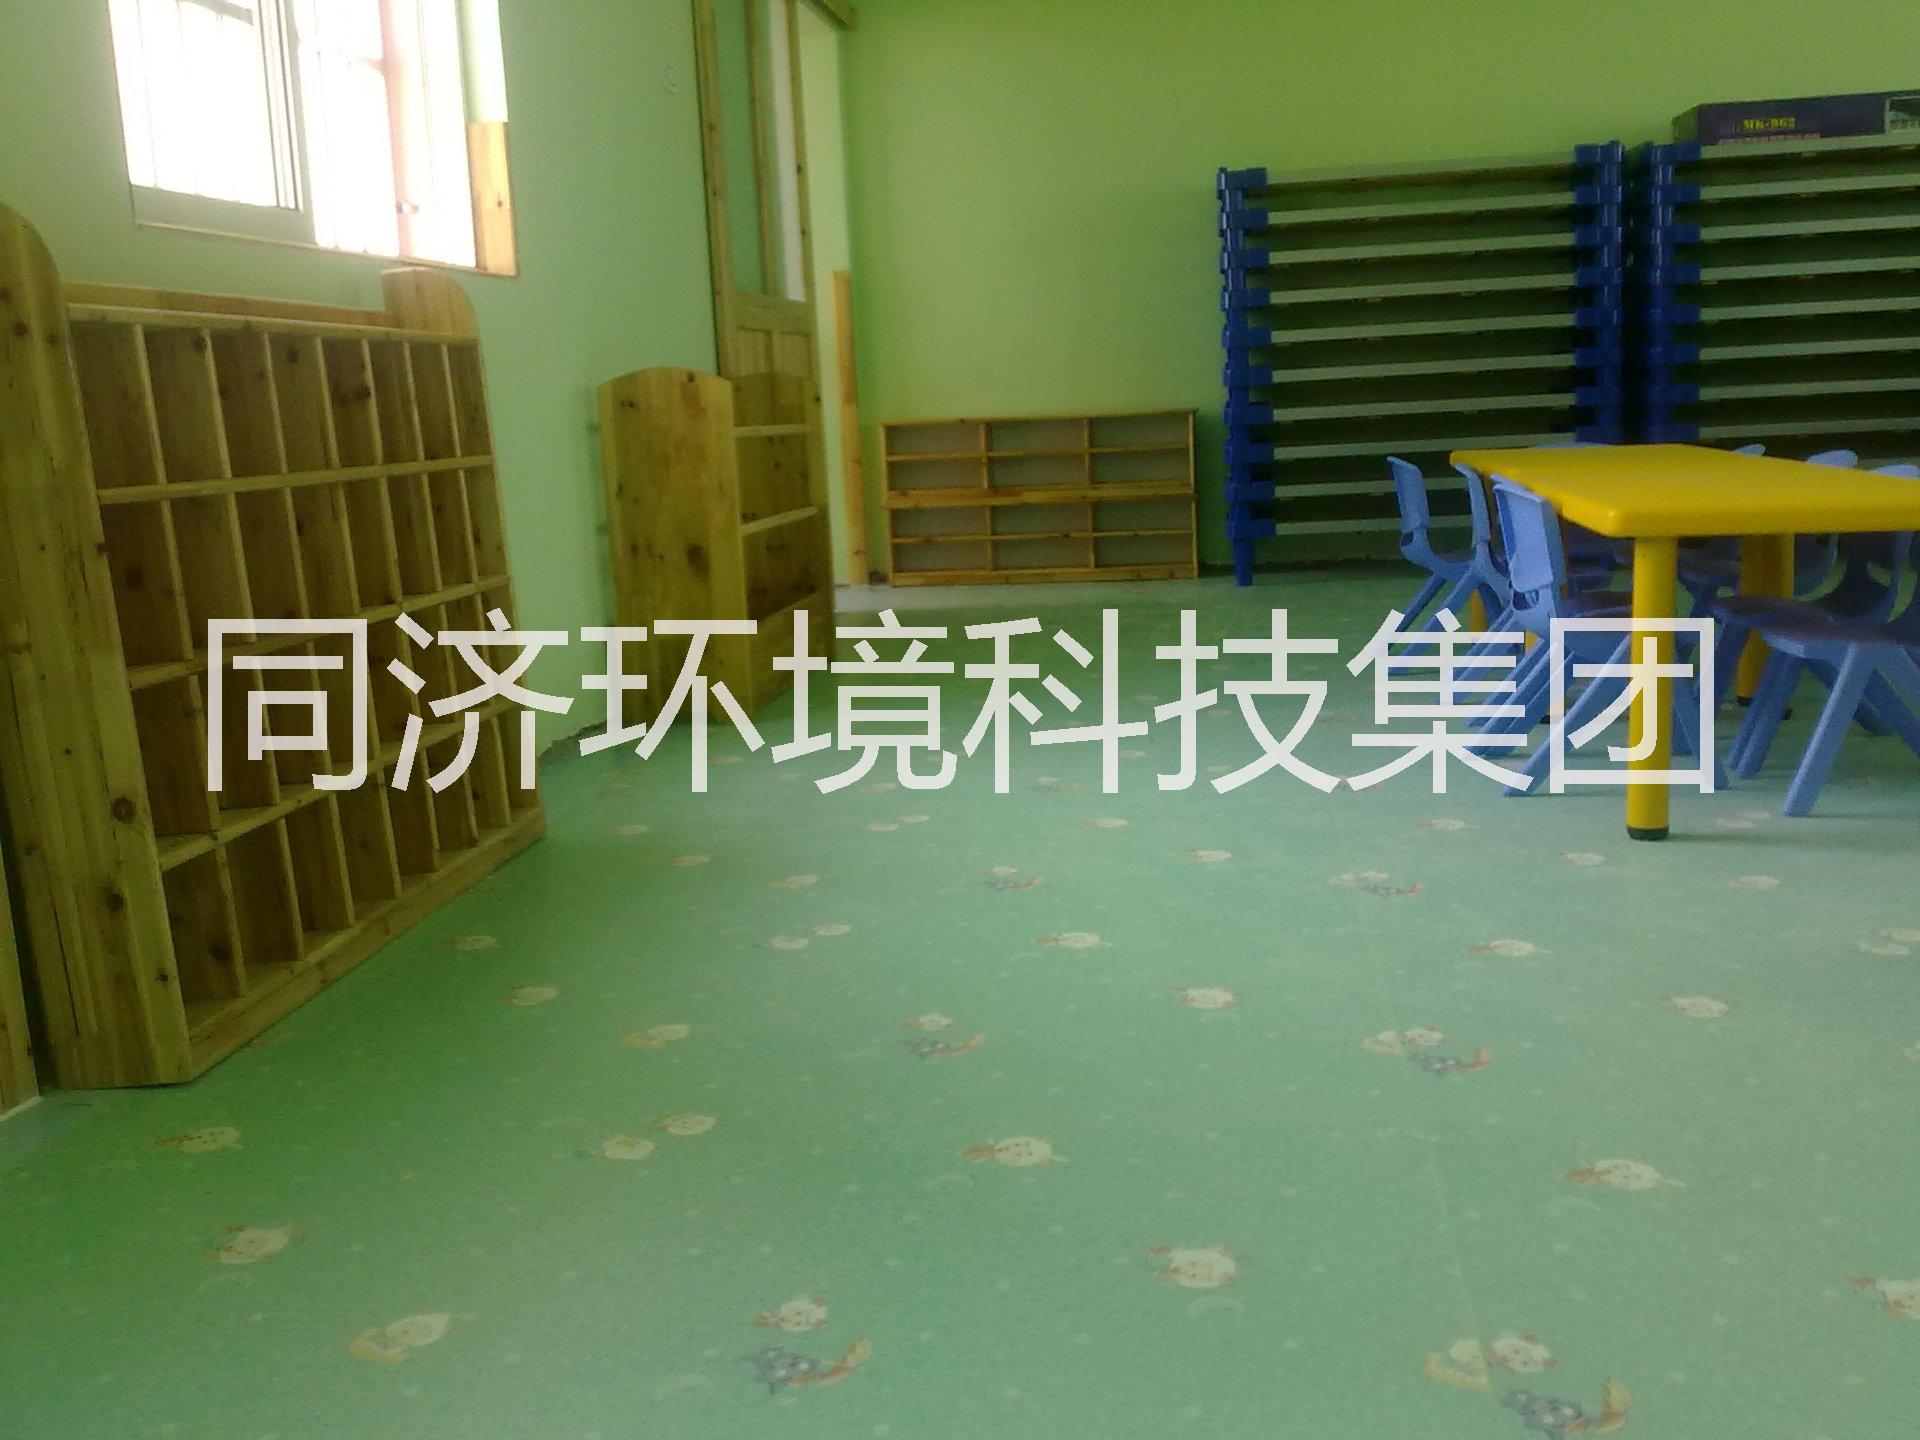 幼儿园室内 石塑地板 橡胶地板 石塑地板价格 东莞石塑地板价格图片